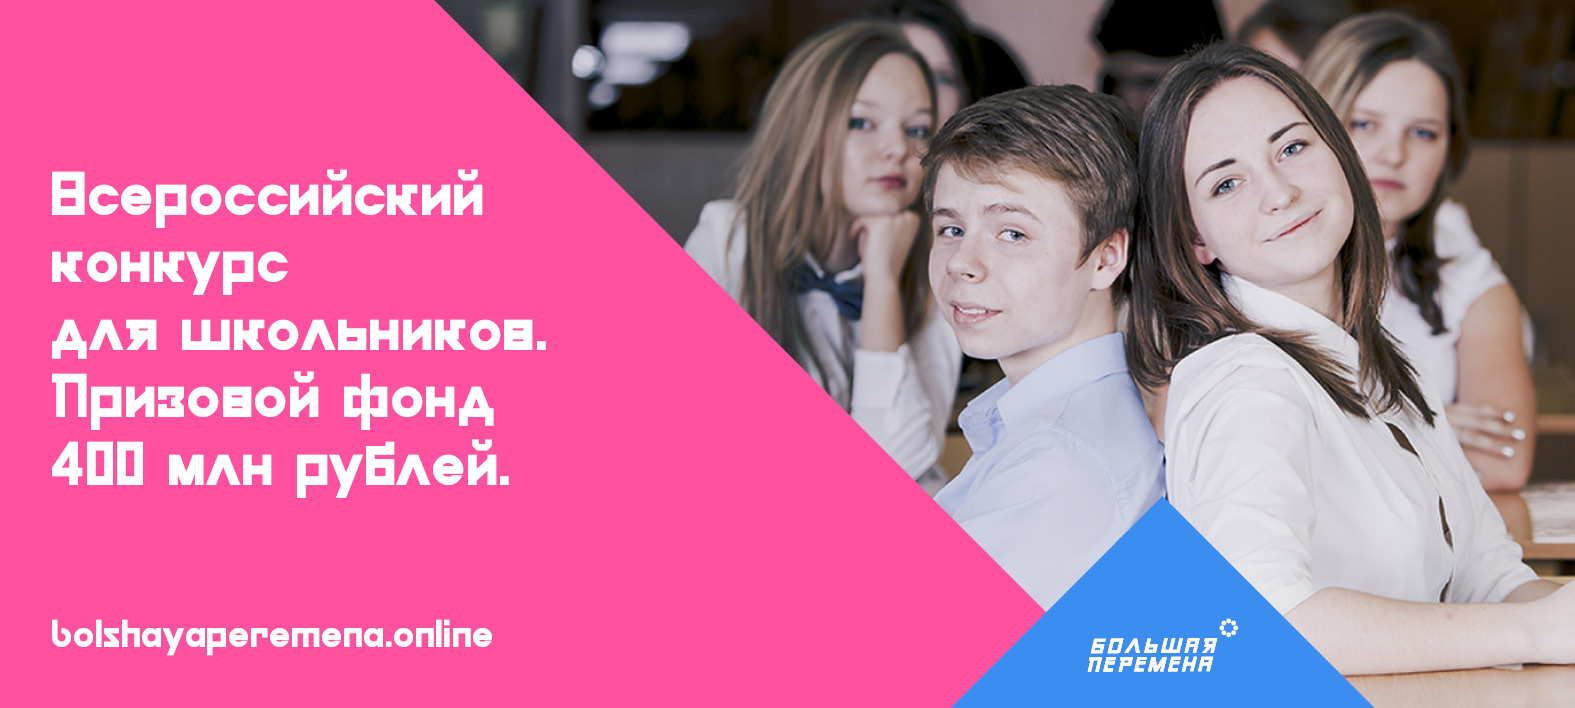 Всероссийский конкурс для школьников “Большая перемена”